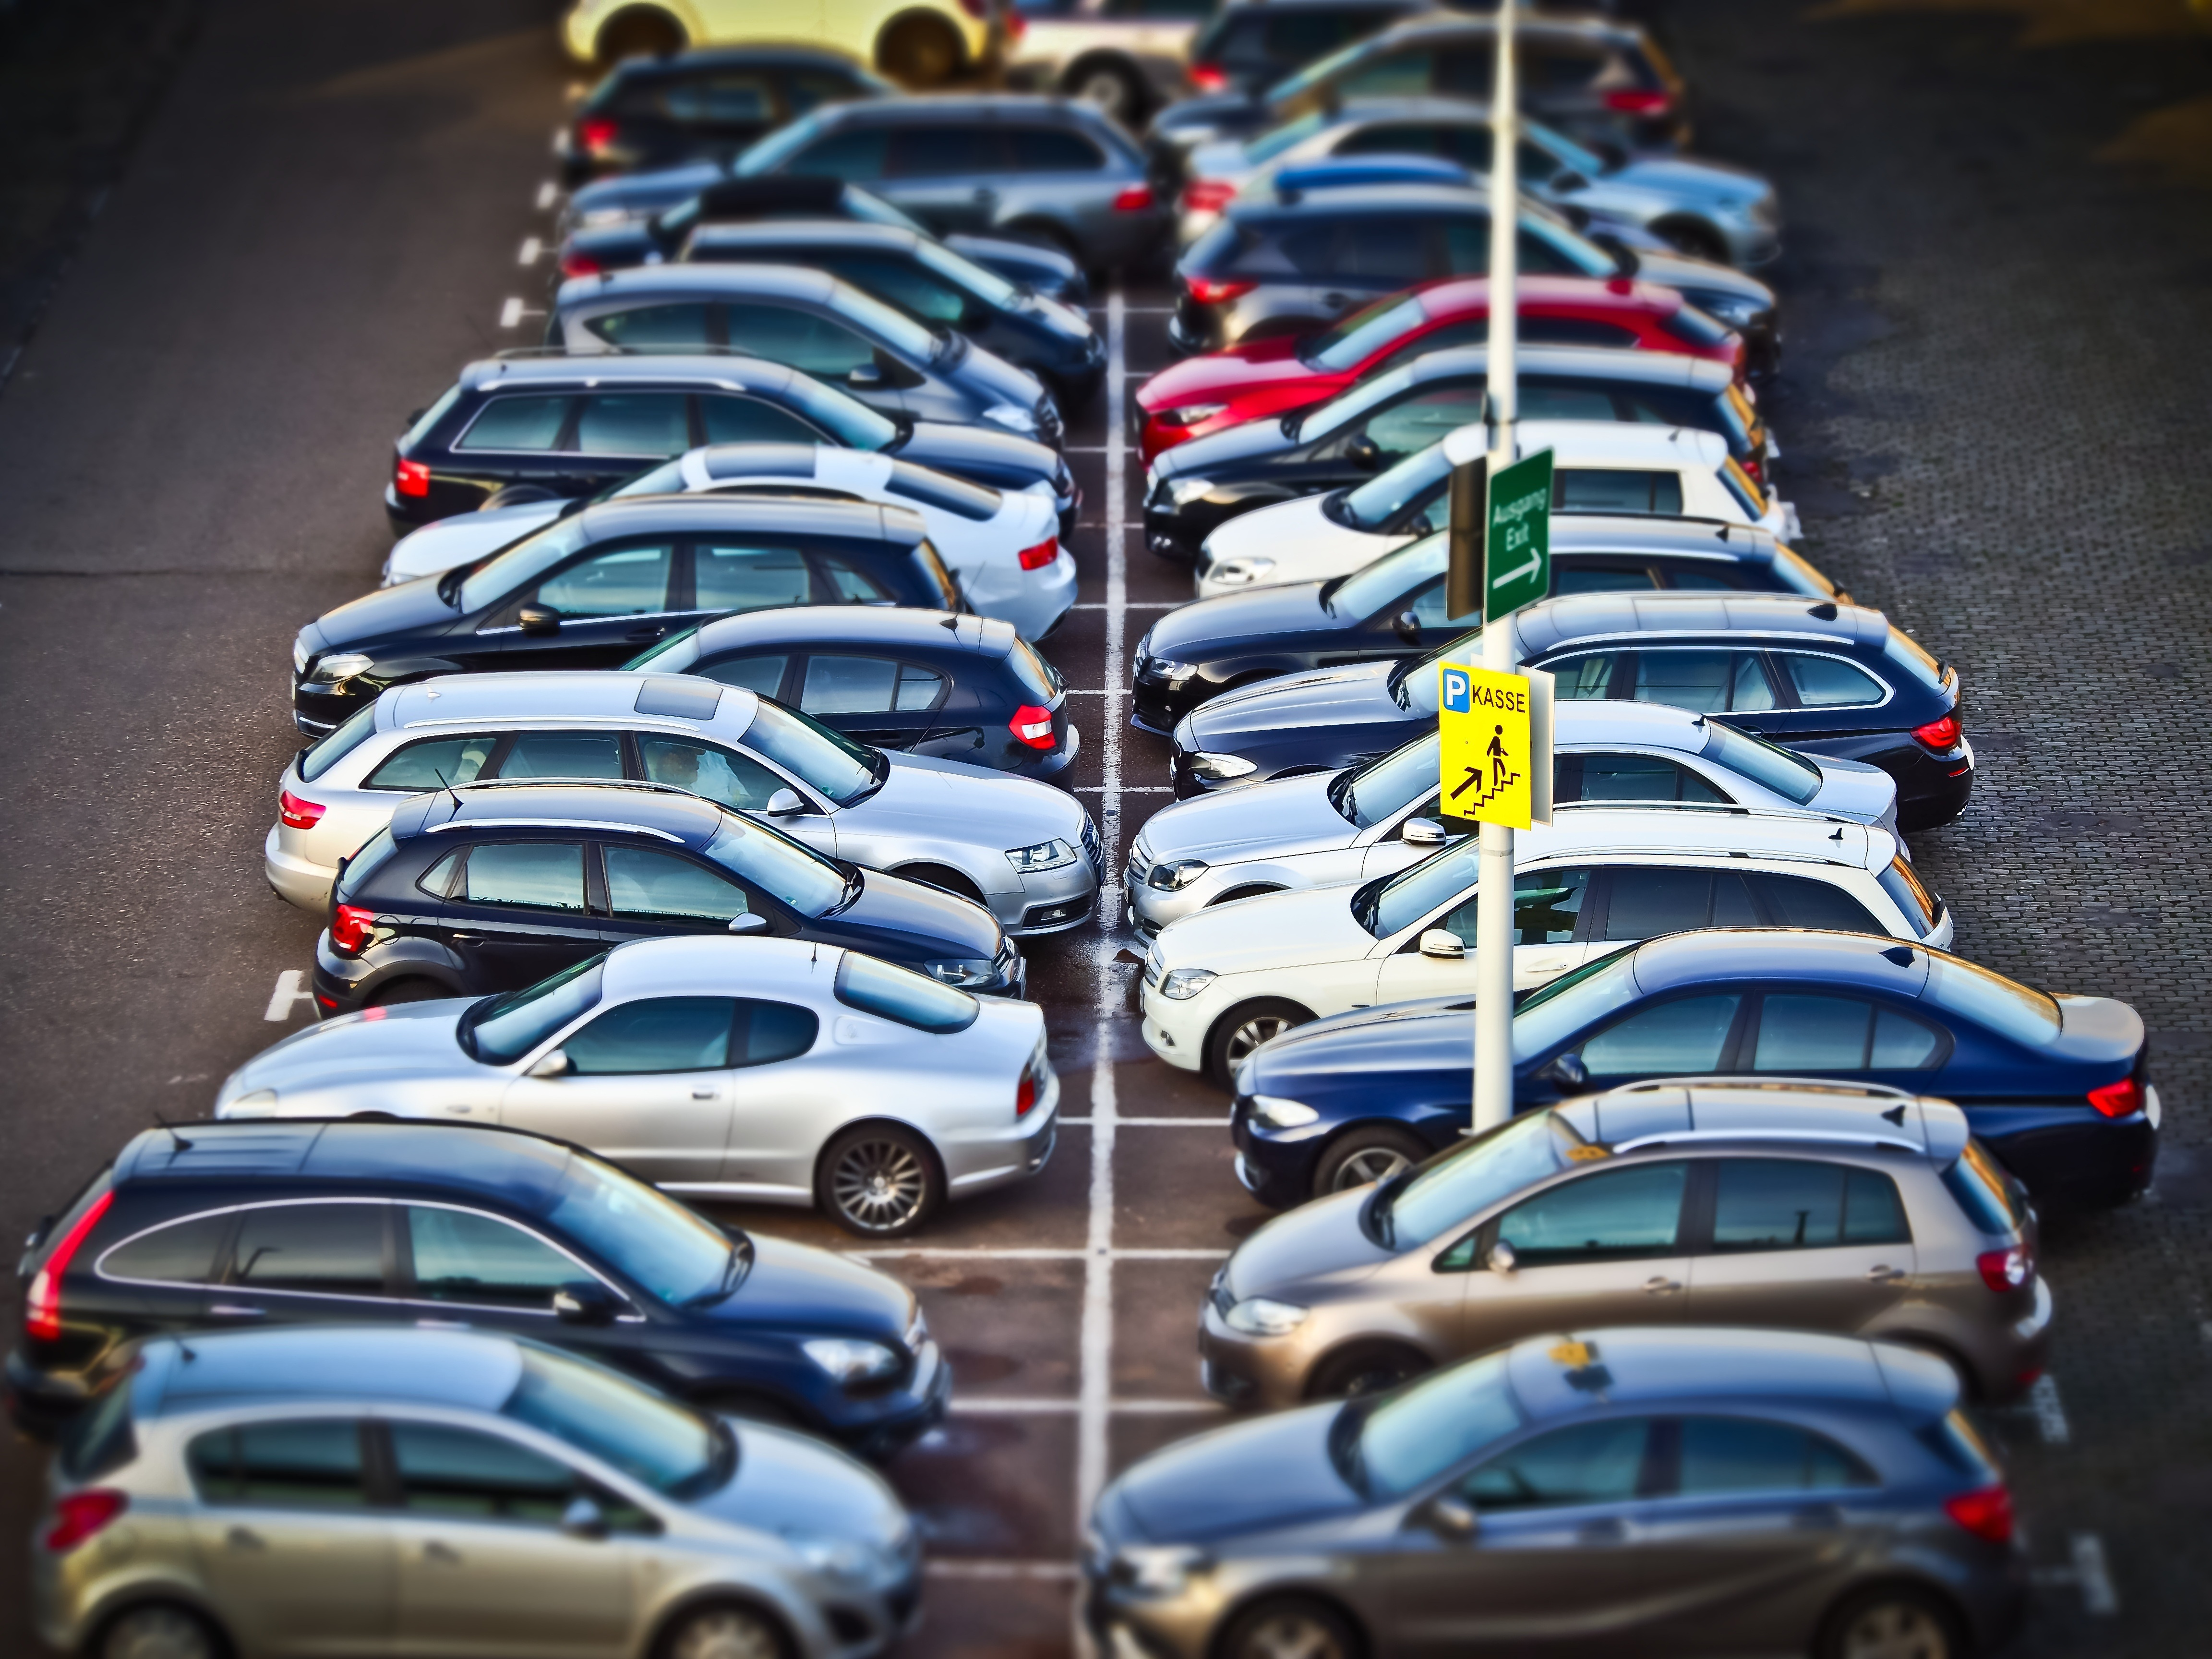 Fotografia de um pátio de carros estacionados